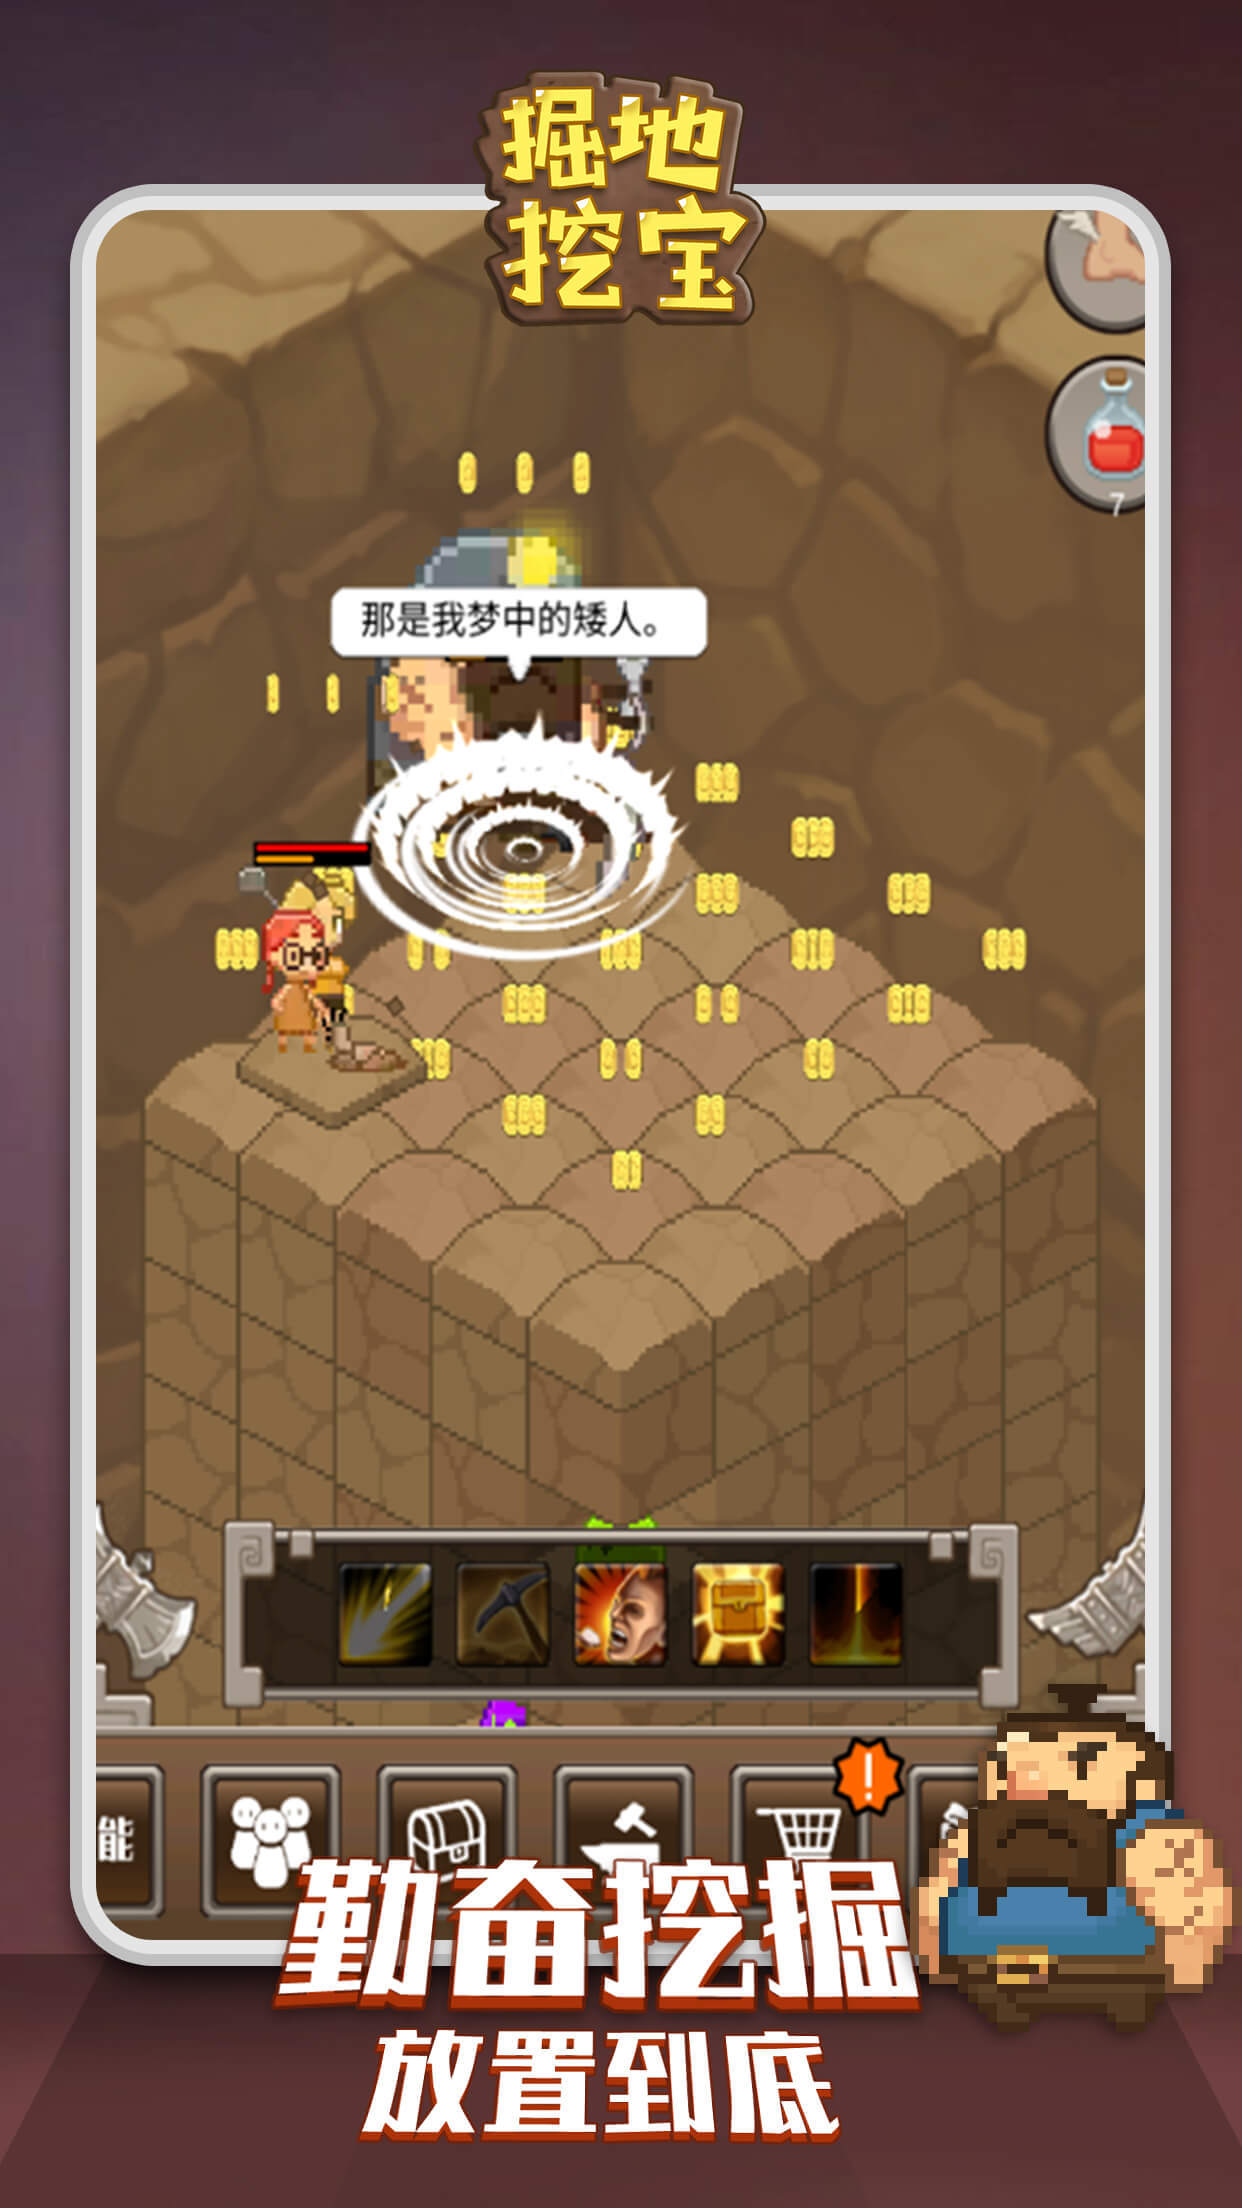 Screenshot 1 of Đào tìm kho báu 